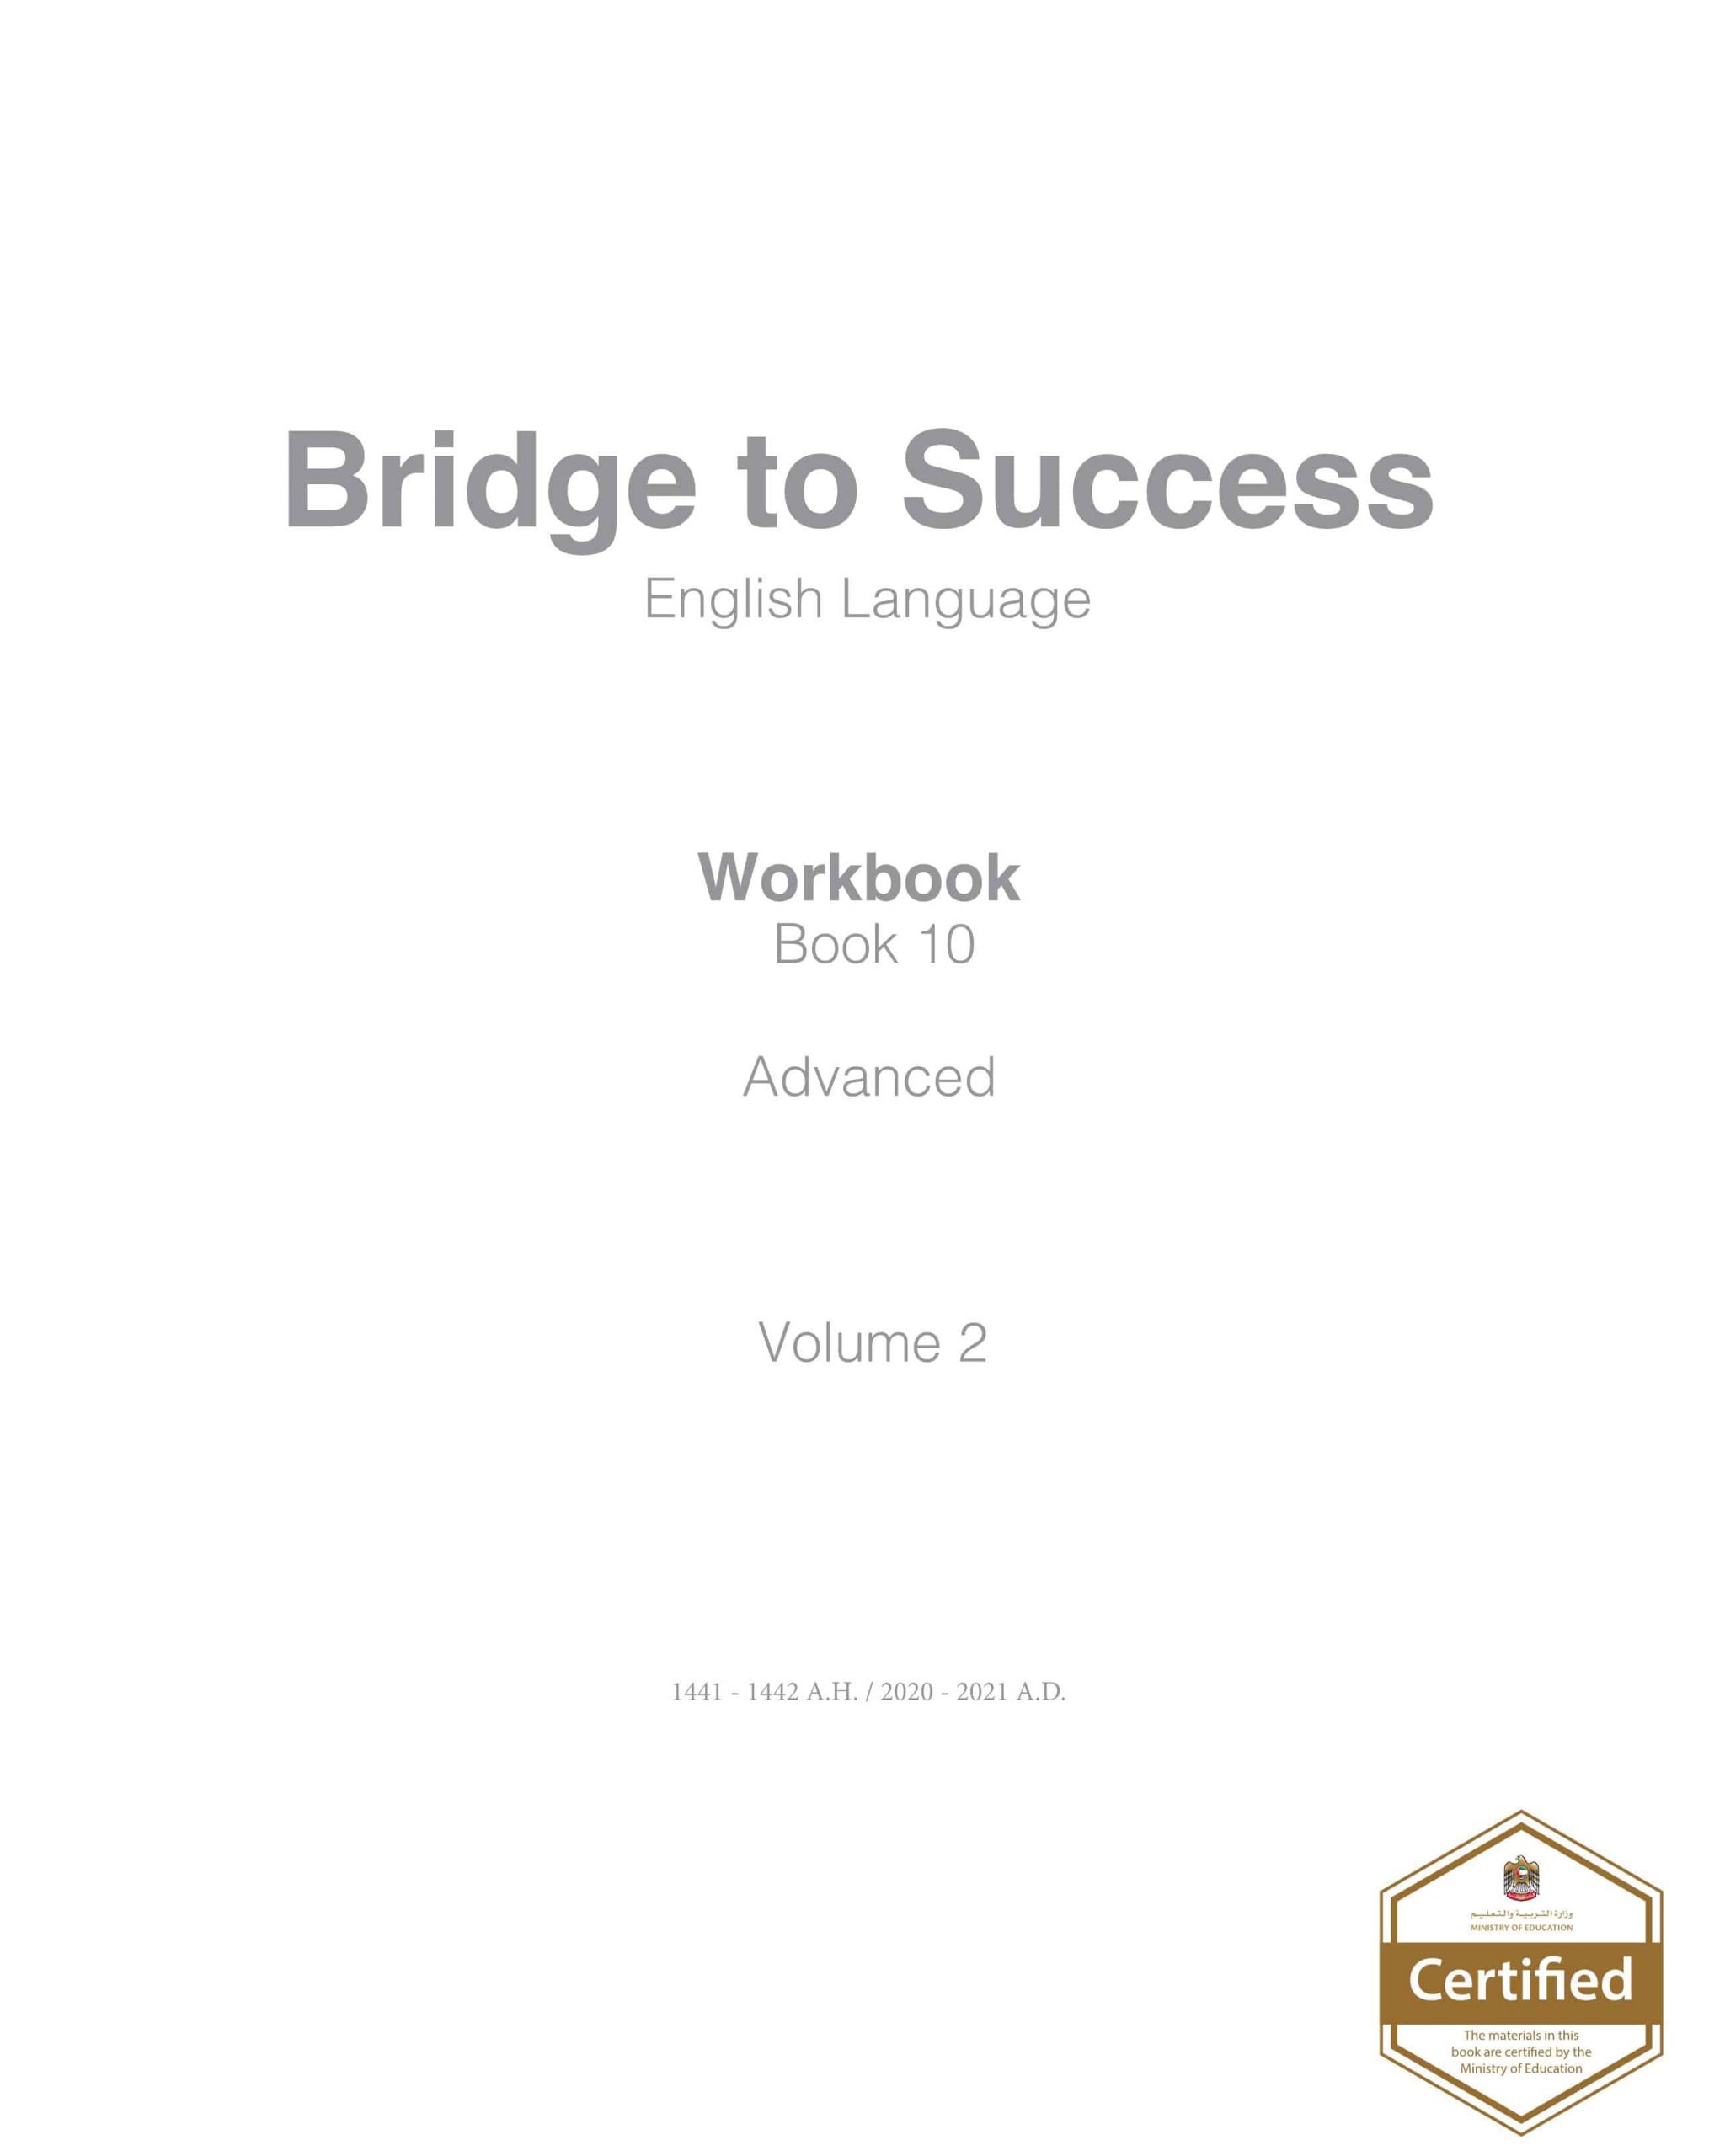 كتاب النشاط Workbook الفصل الدراسي الثاني 2020-2021 الصف العاشر مادة اللغة الانجليزية 